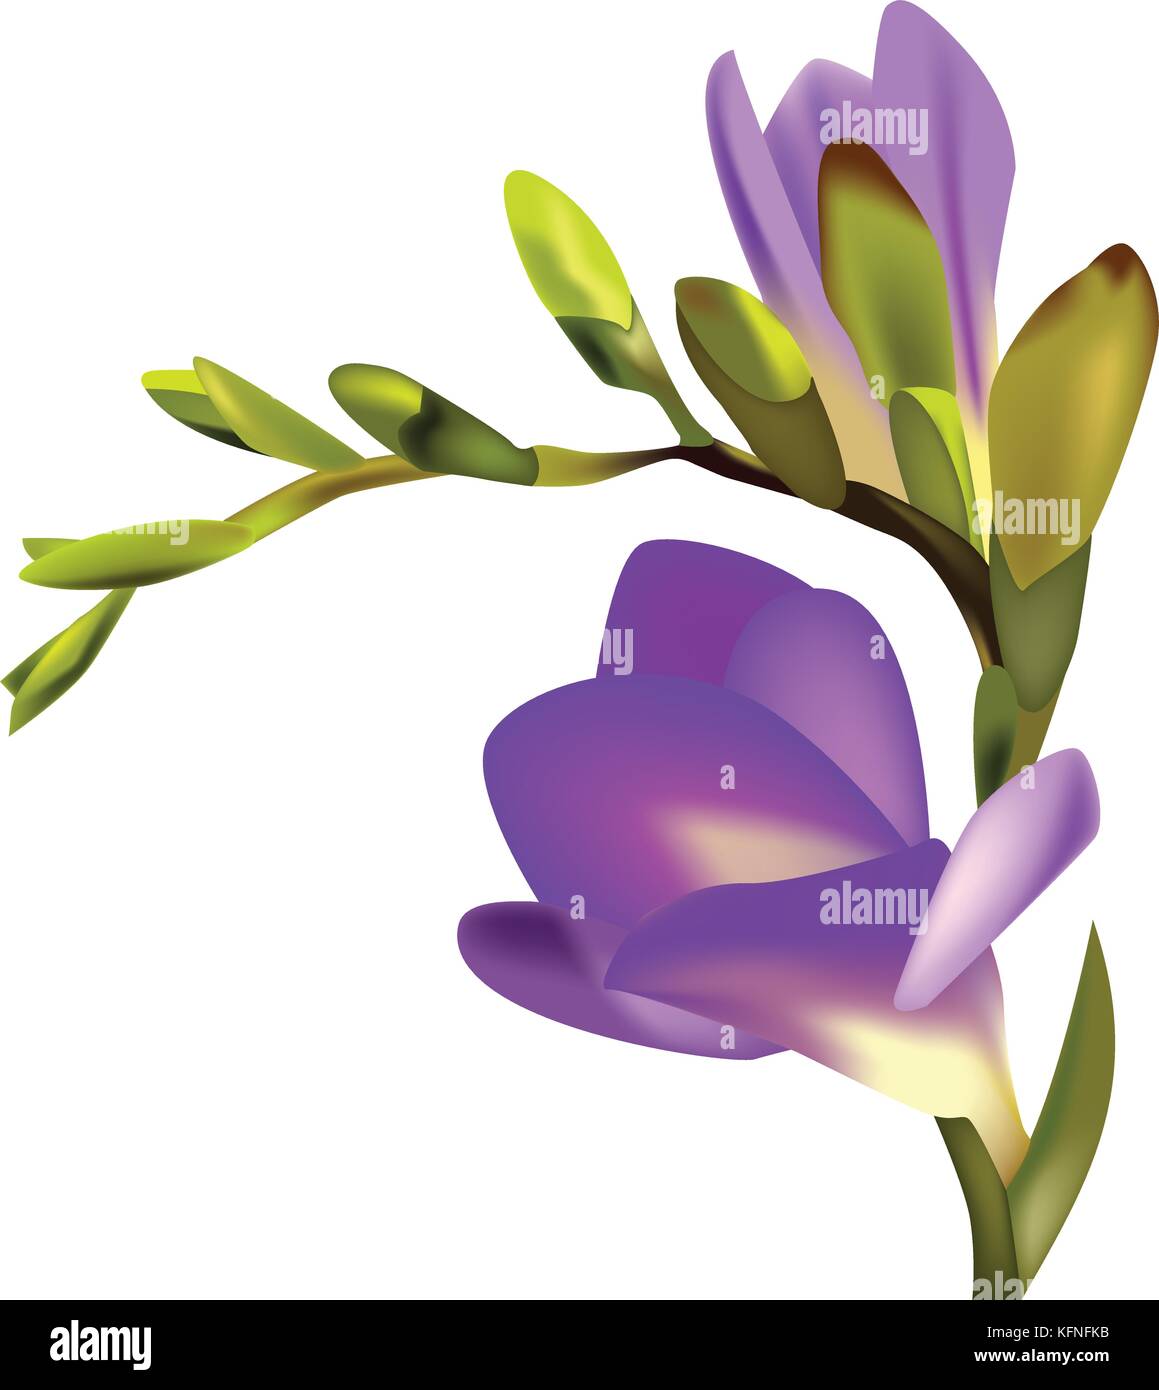 Flower Freesia vector illustration Stock Vector